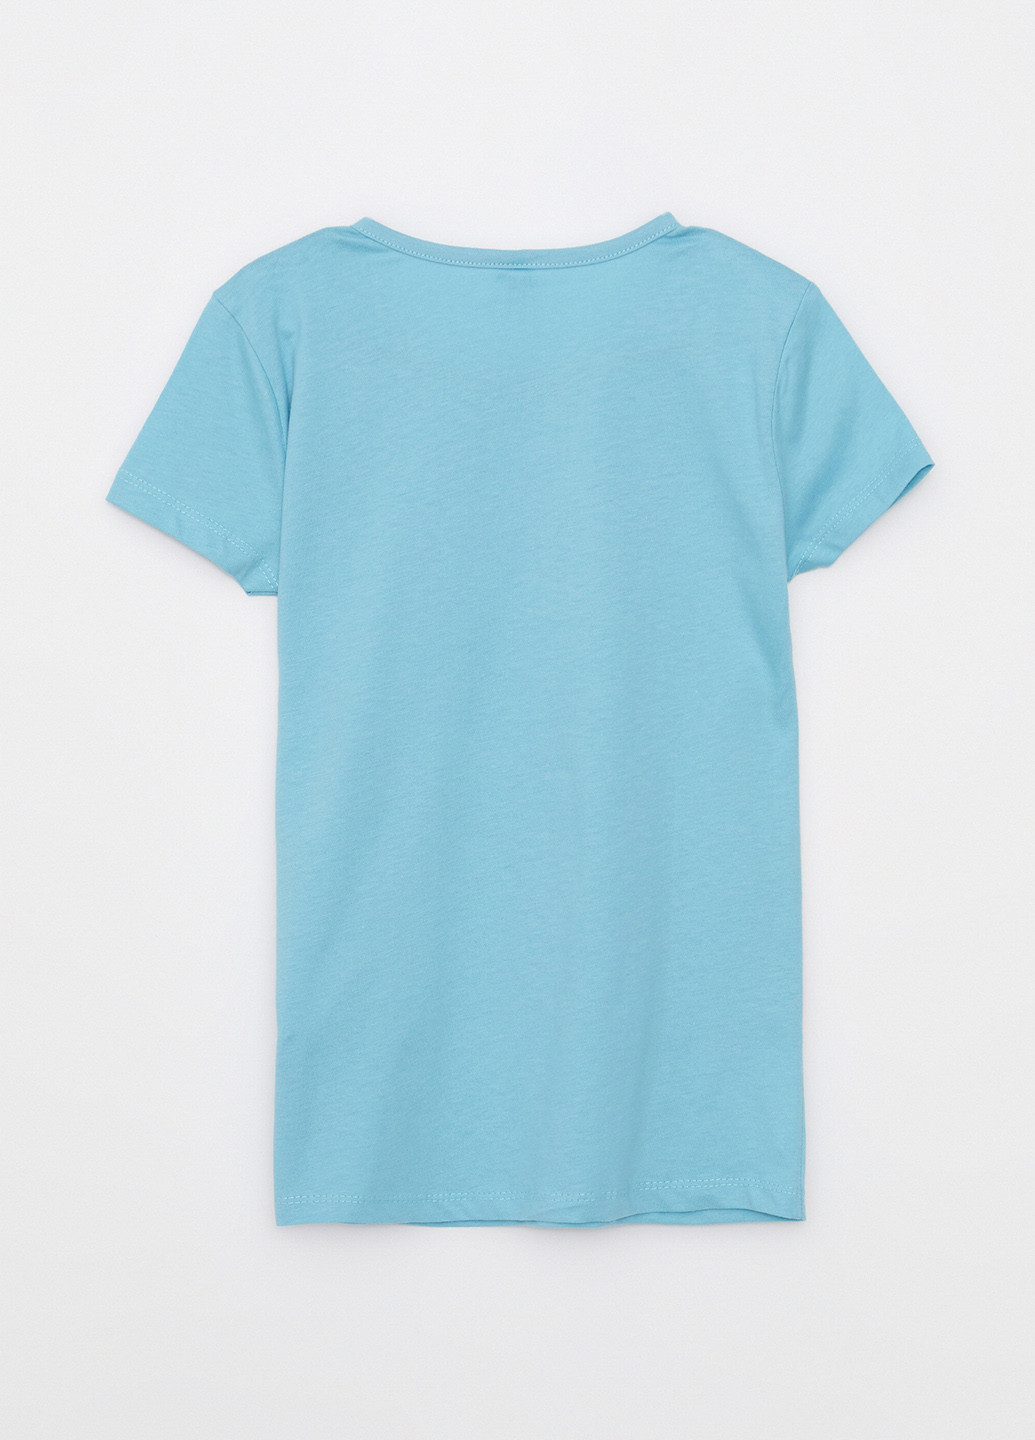 Голубая всесезон пижама (футболка, шорты) футболка + шорты LC Waikiki